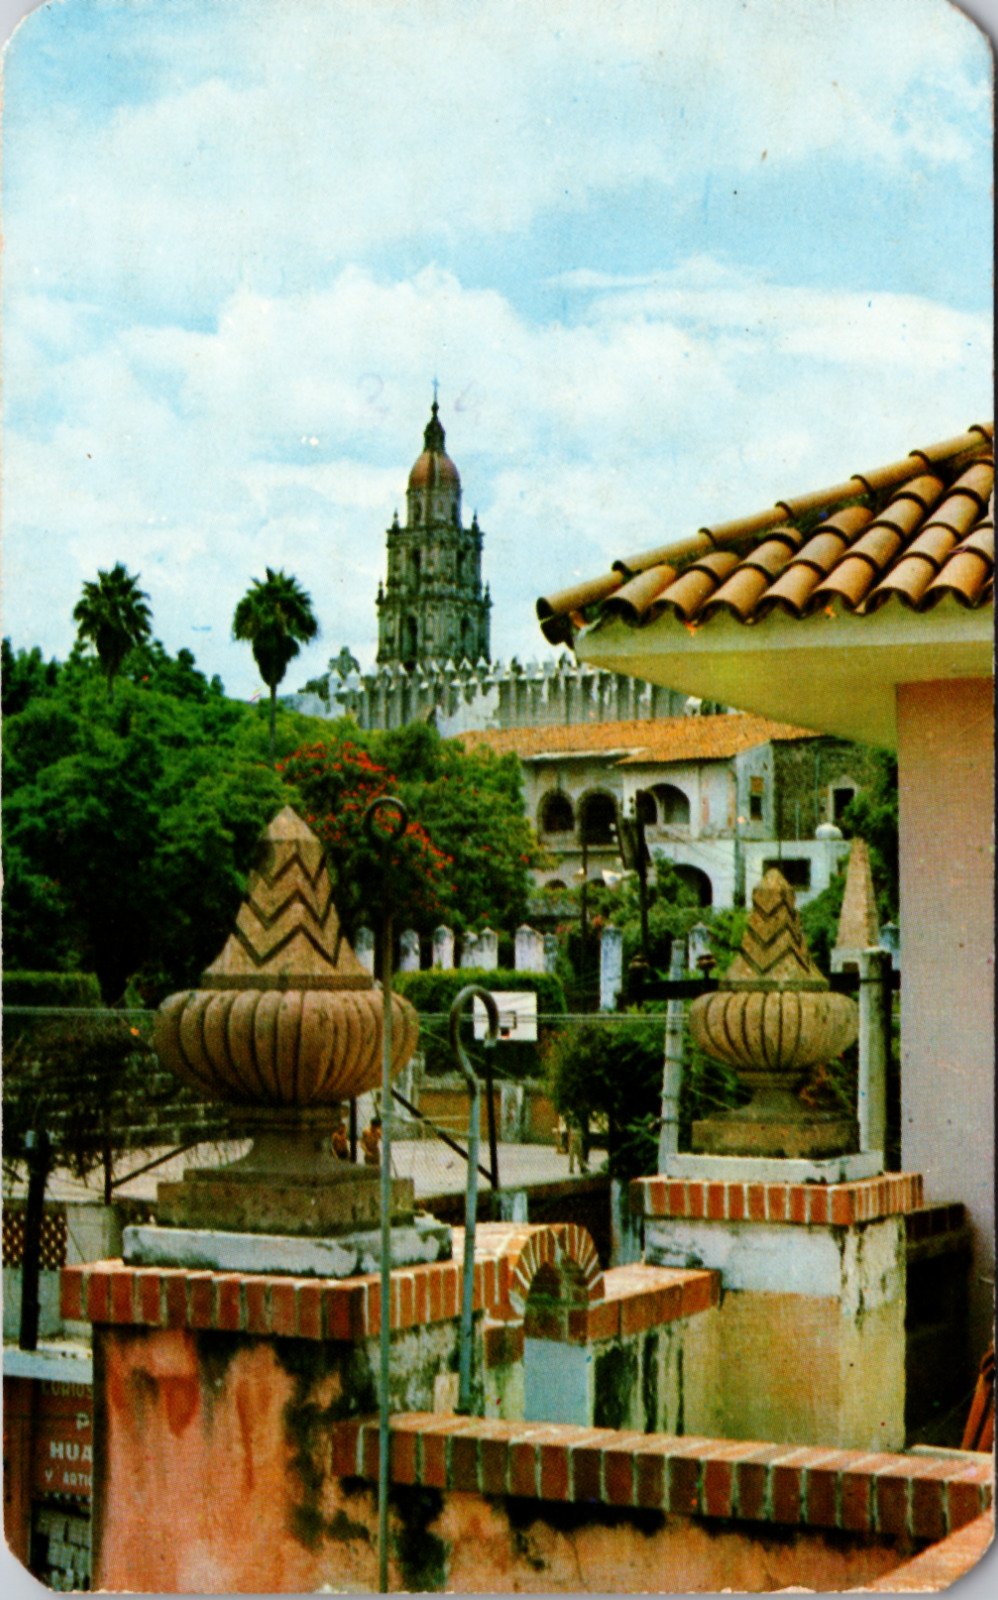 Parcial View, Cuernavaca, Mexico, Vintage Postcard